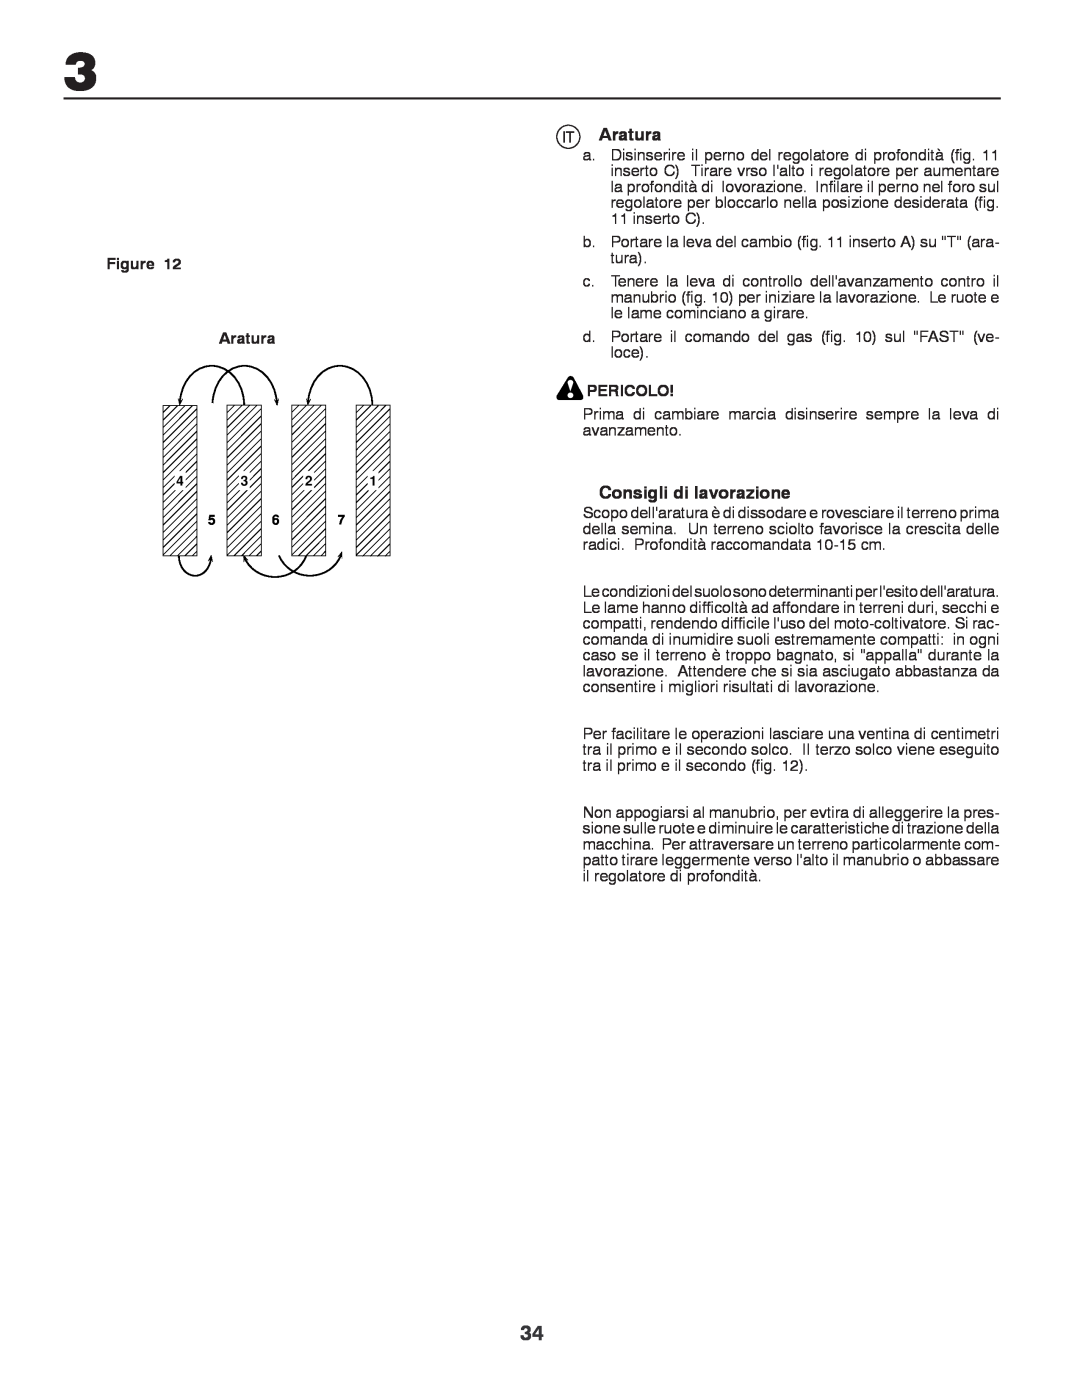 Husqvarna CRT81 instruction manual Aratura, Consigli di lavorazione, Pericolo 